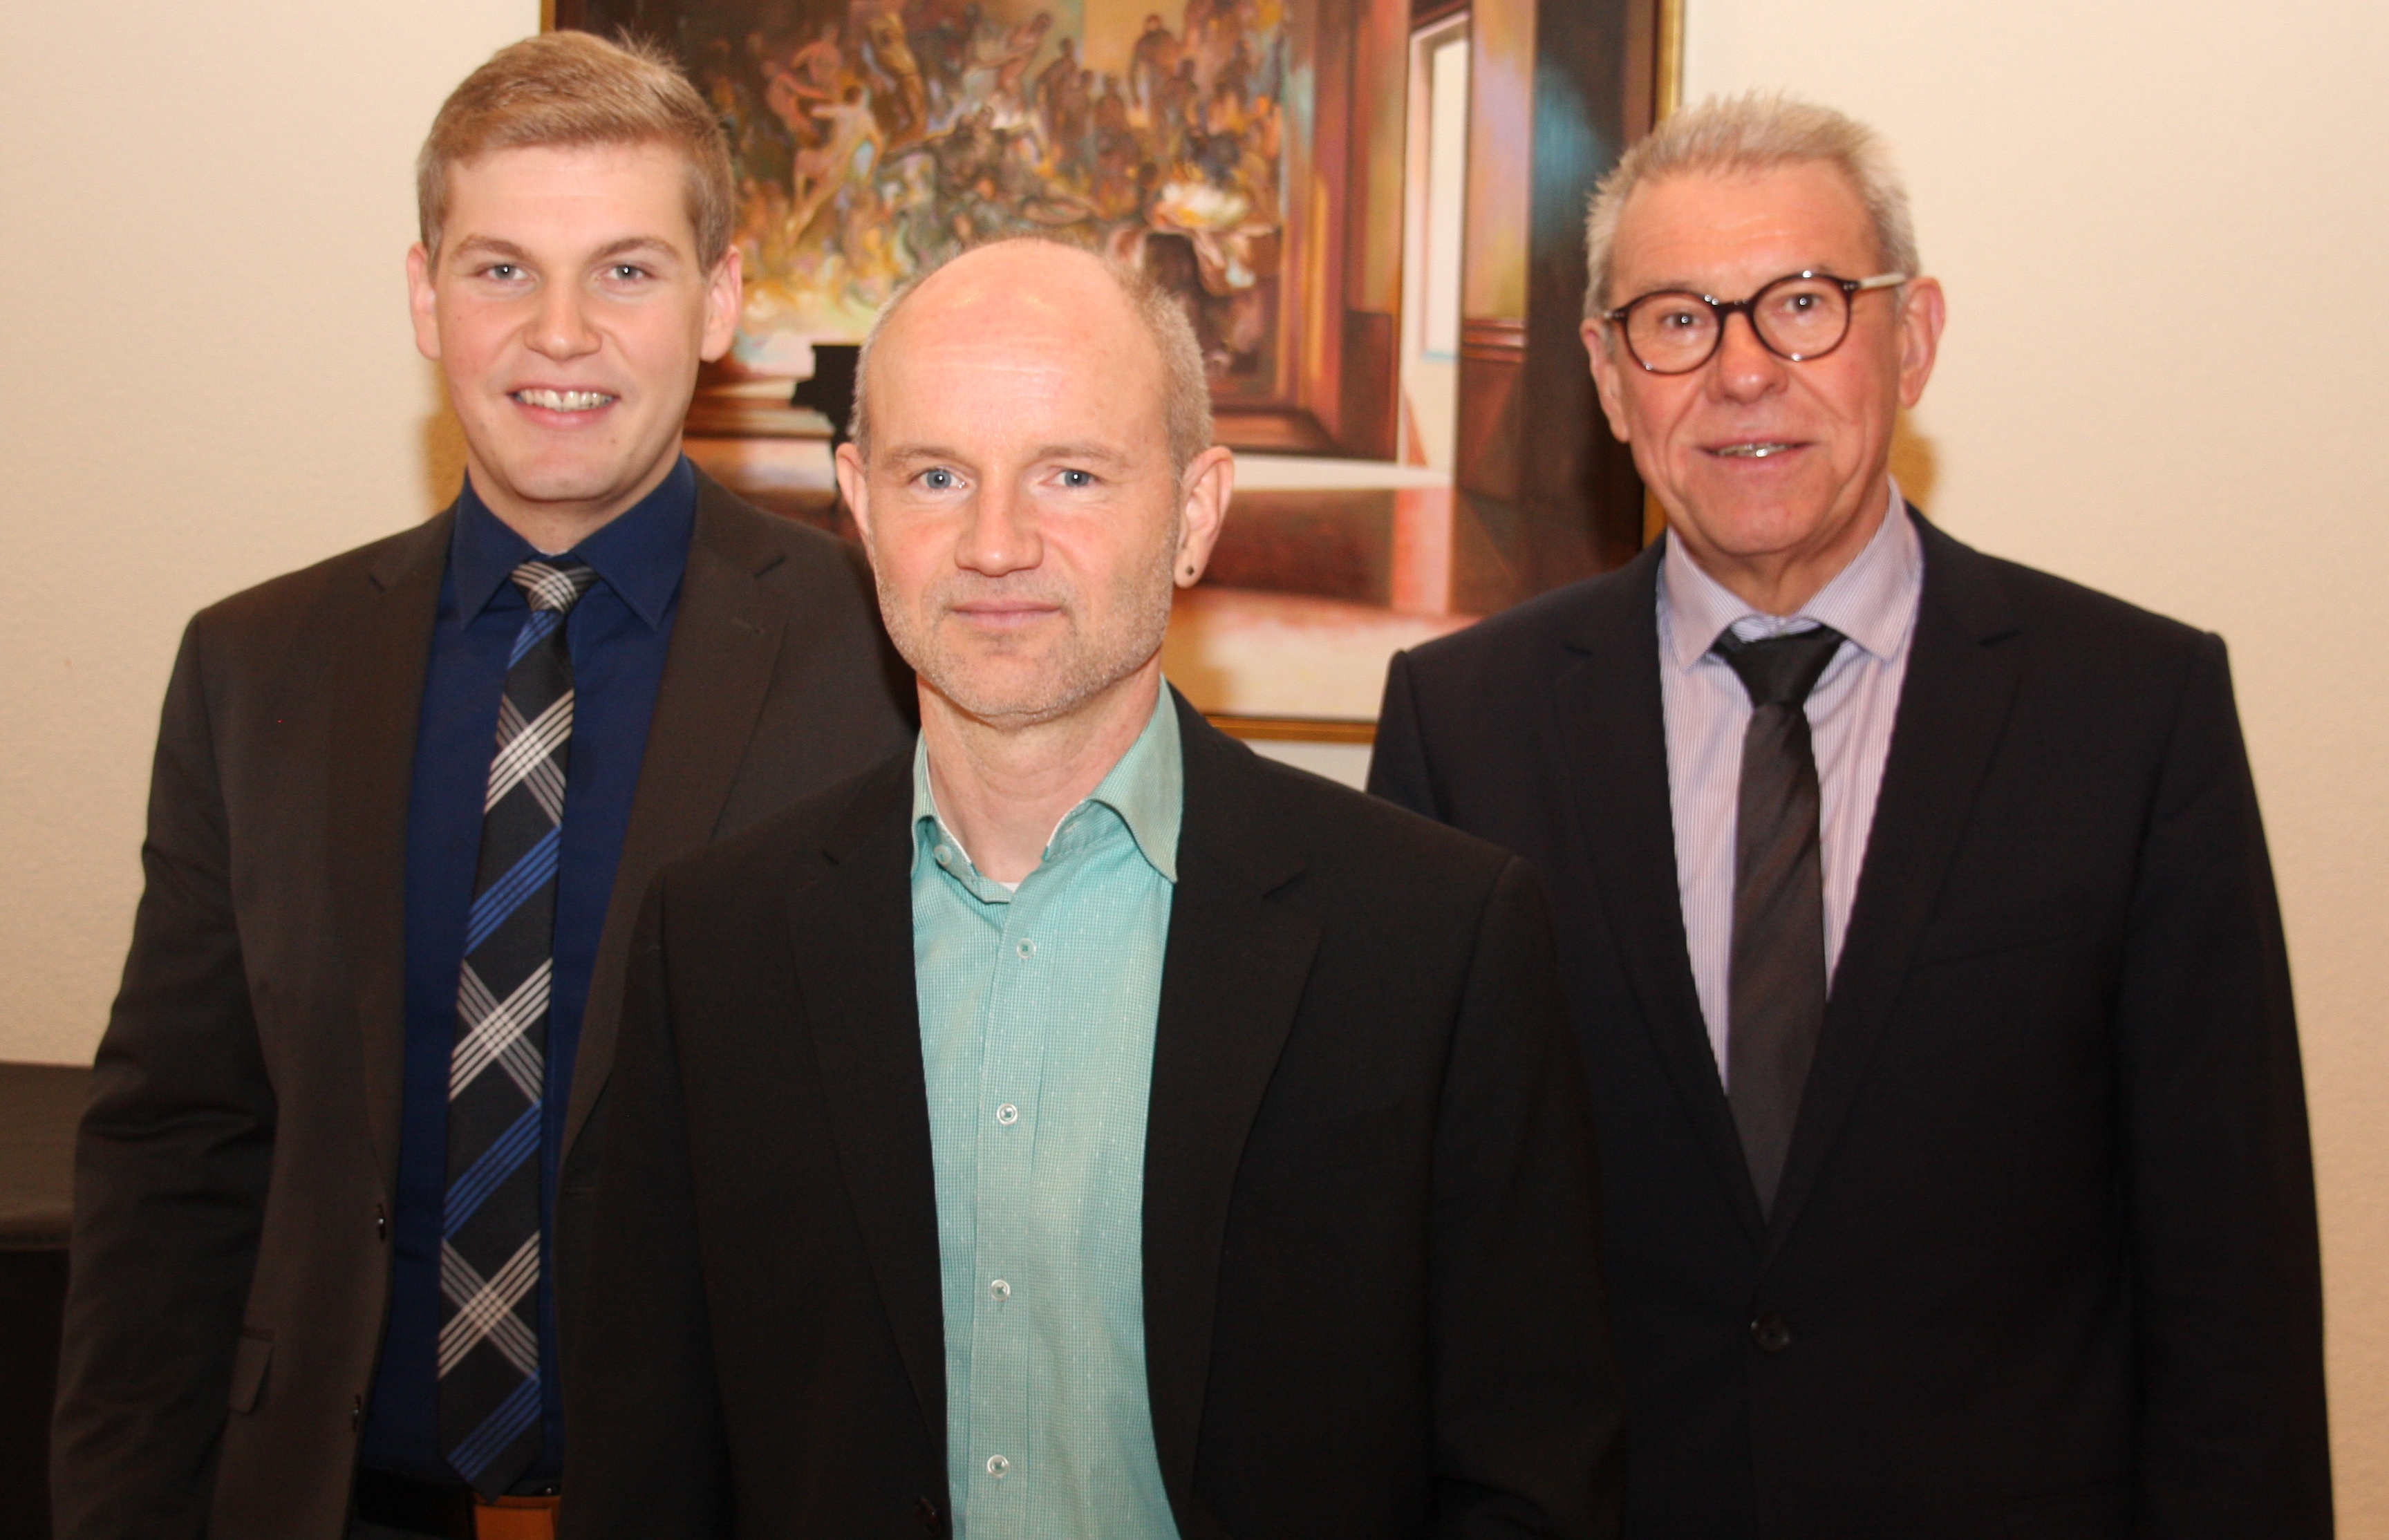 Der stellvertretende Geschäftsführer Maik Schwendemann (links) und Bürgermeister Heinz Winkler (rechts) stellten im Haus der Musik den neuen Dirigenten Georg Schnurr vor.